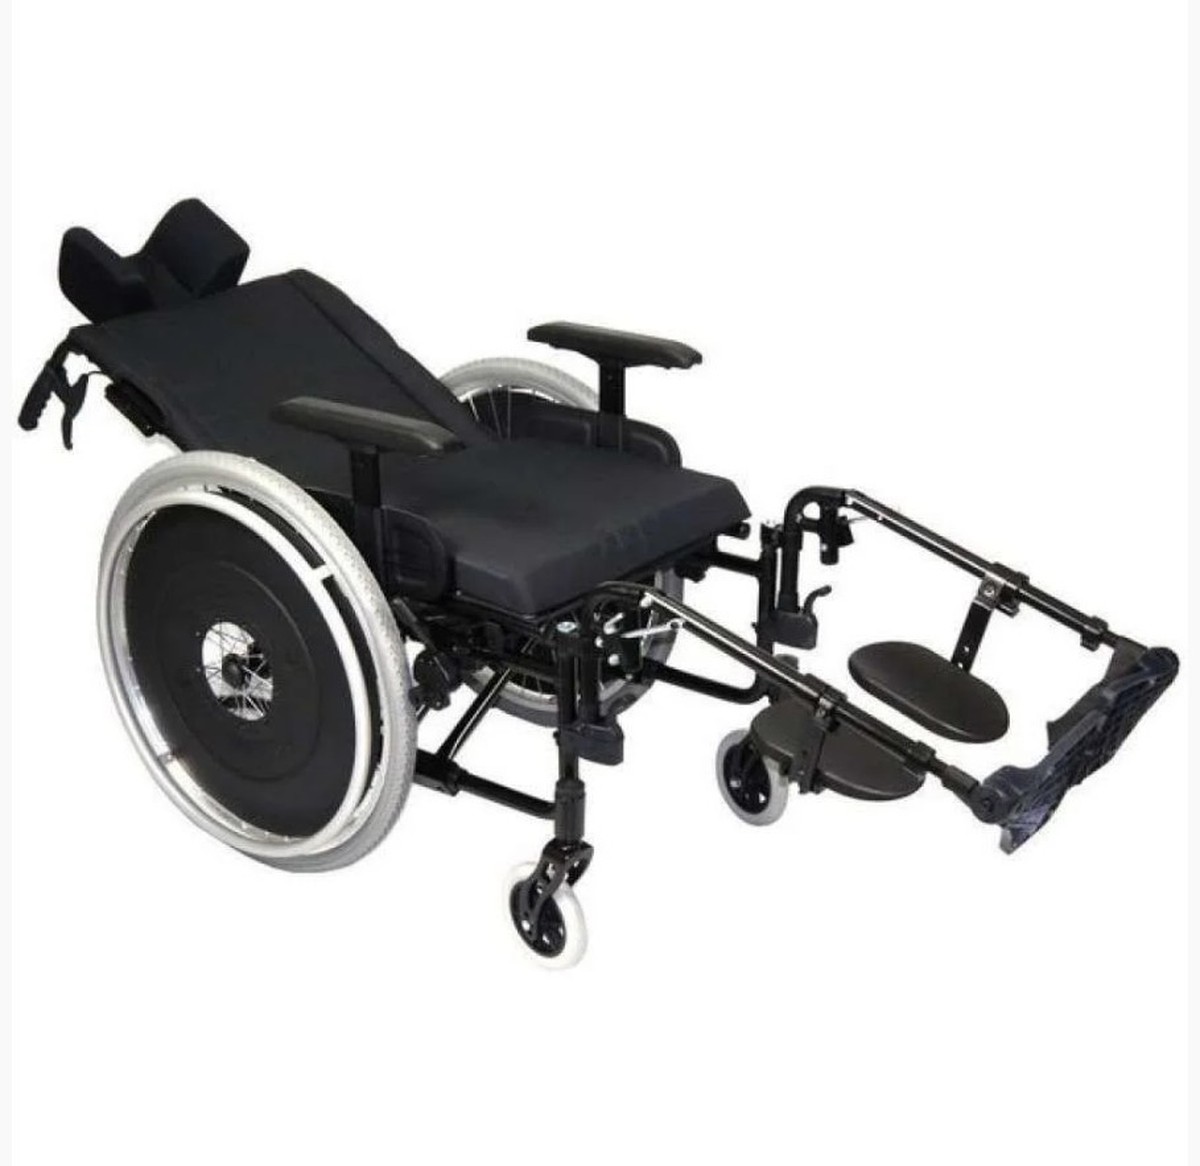 Foto do produto Cadeira de Rodas AVD Alumínio Reclinável até 120kg 